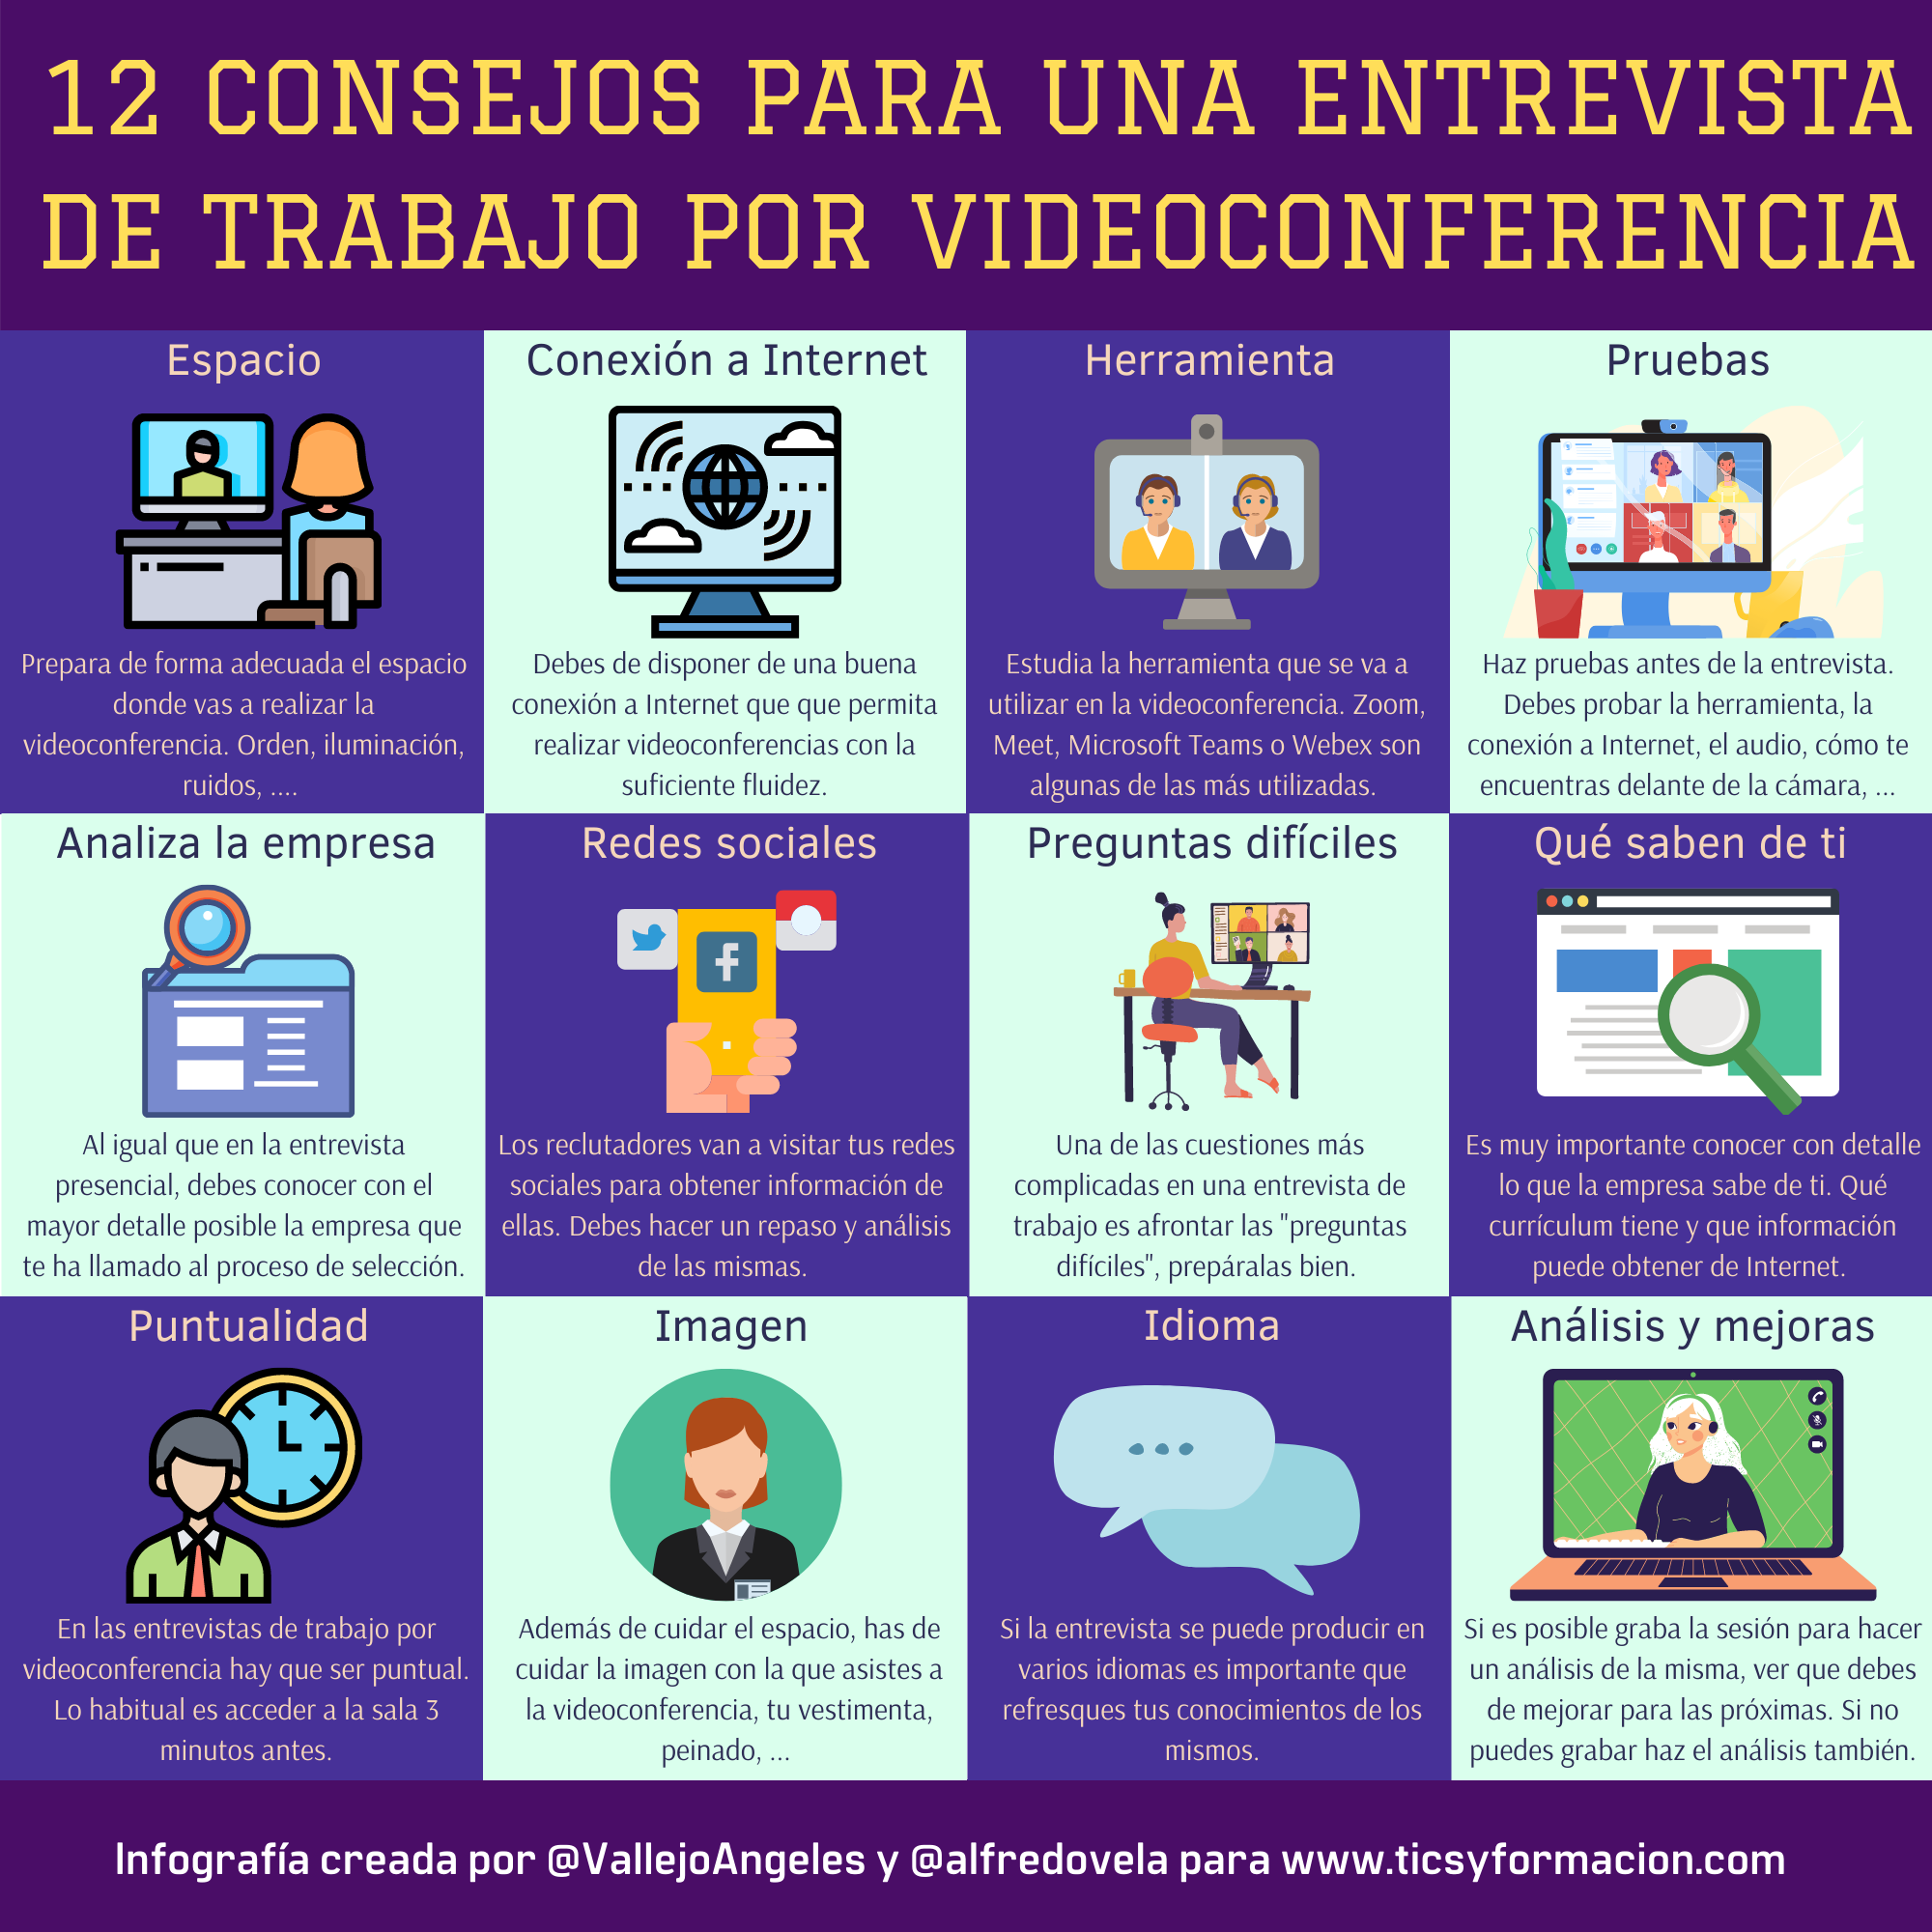 12 consejos para una entrevista de trabajo por videoconferencia #infografia #rrhh #empleo